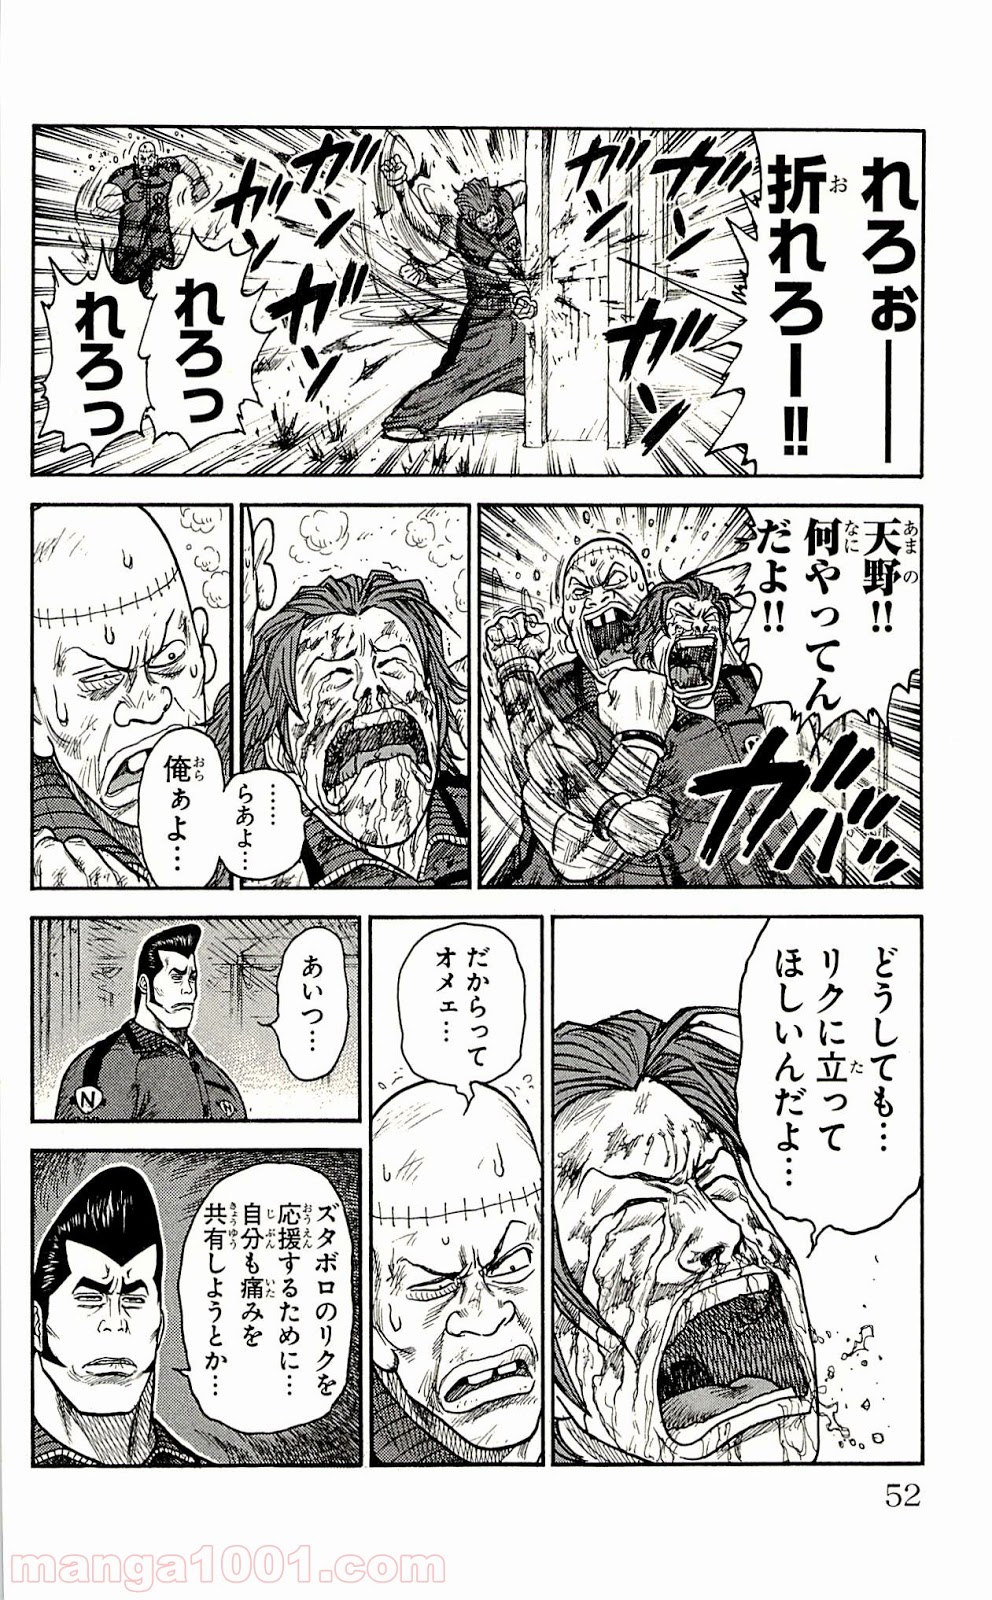 囚人リク Raw 第27話 Manga Raw